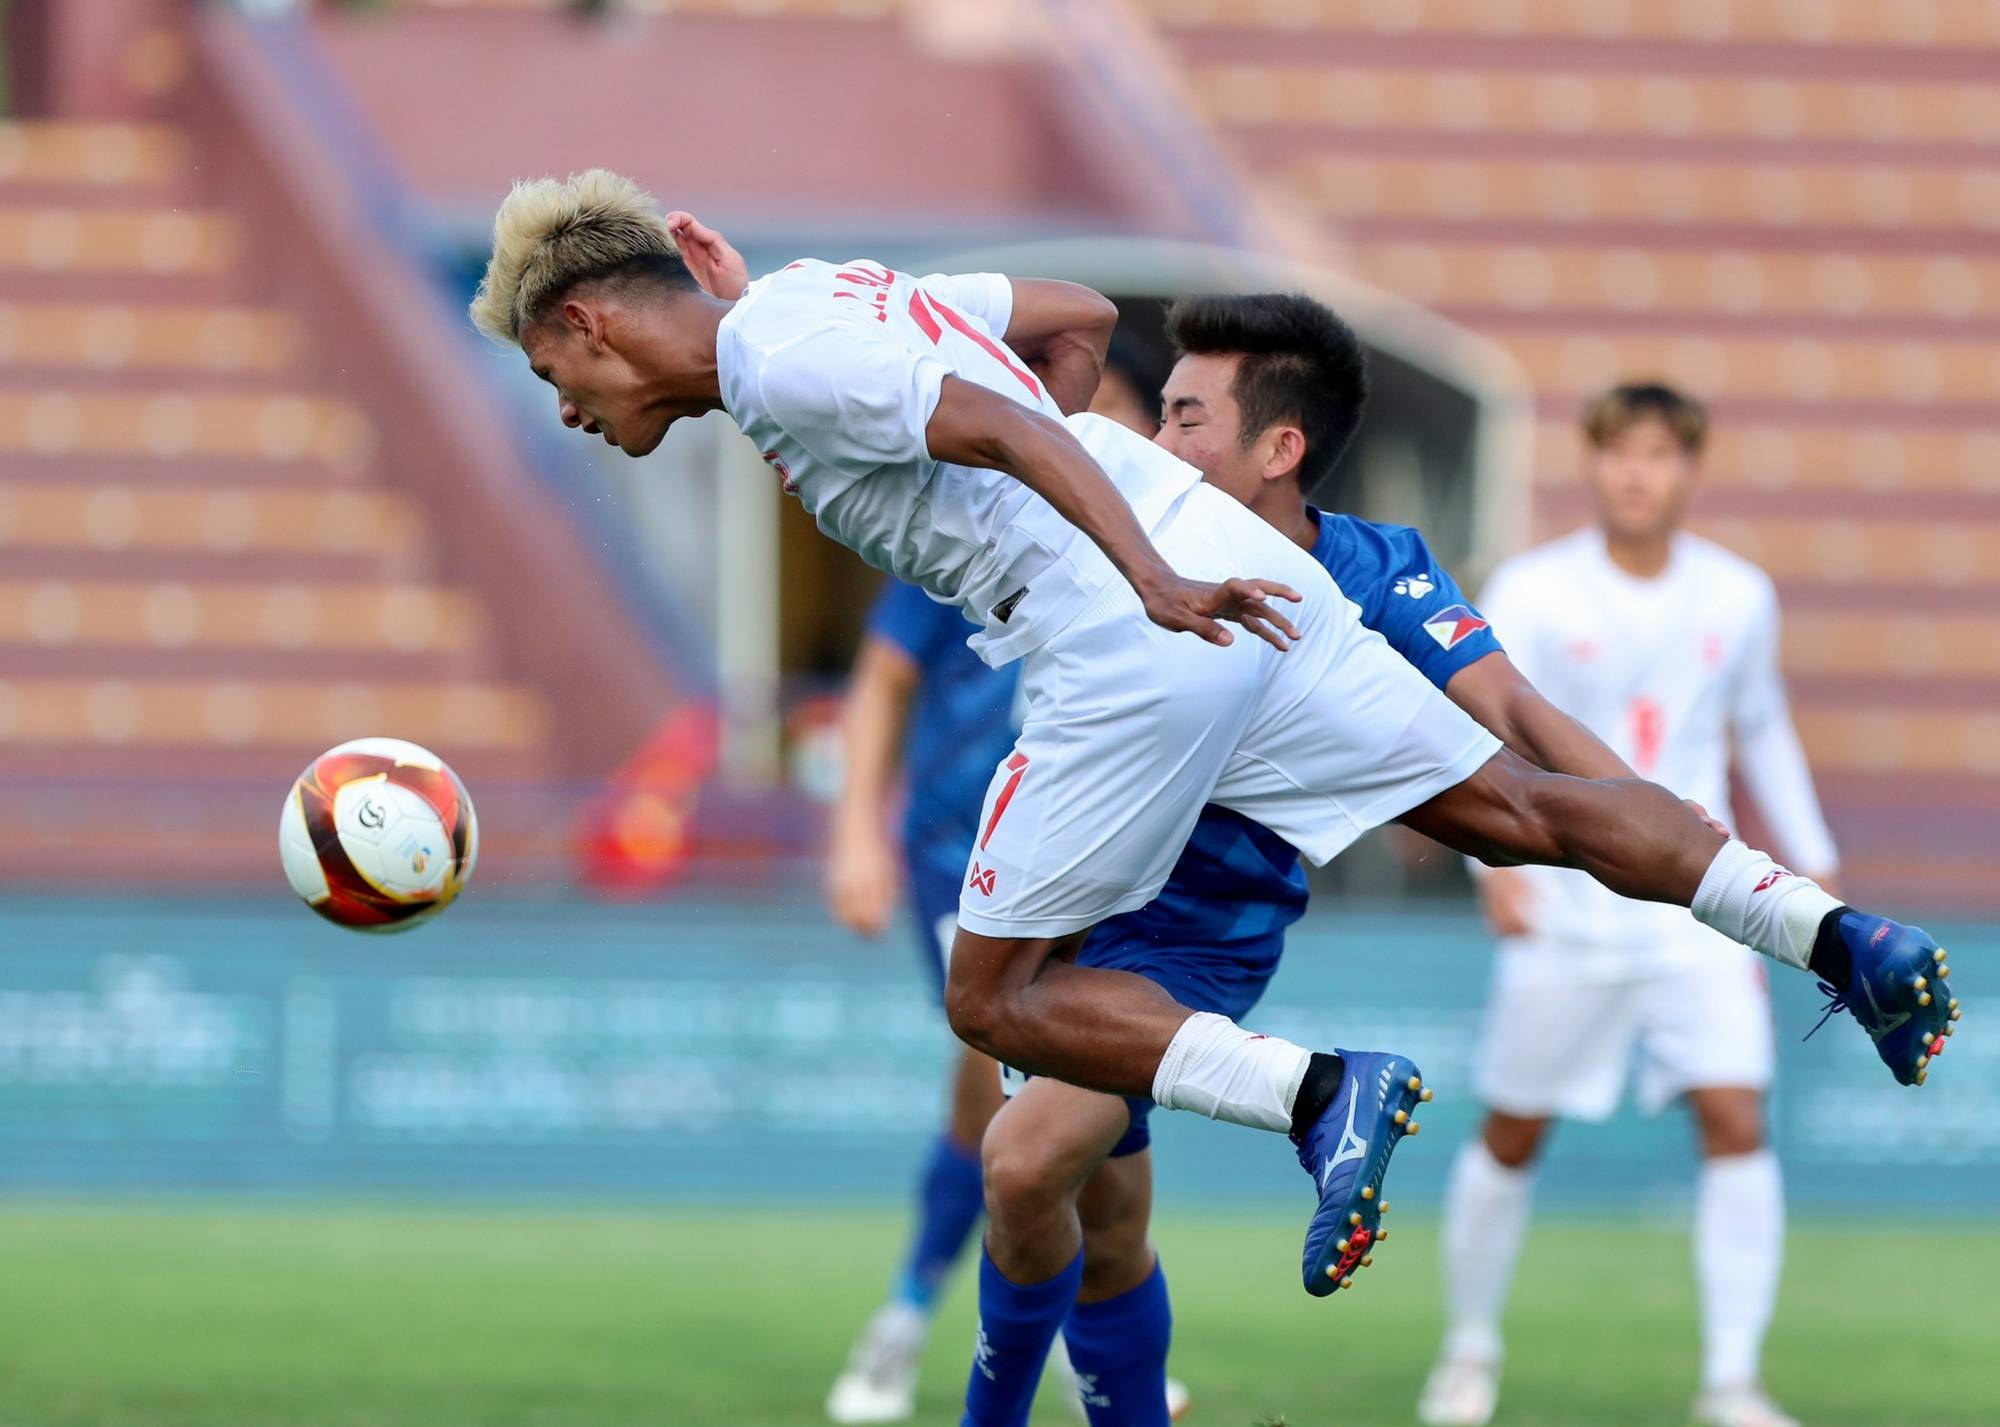 HLV Park Hang-seo đứng suốt trận xem U23 Myanmar thắng ngược U23 Philippines - Ảnh 10.